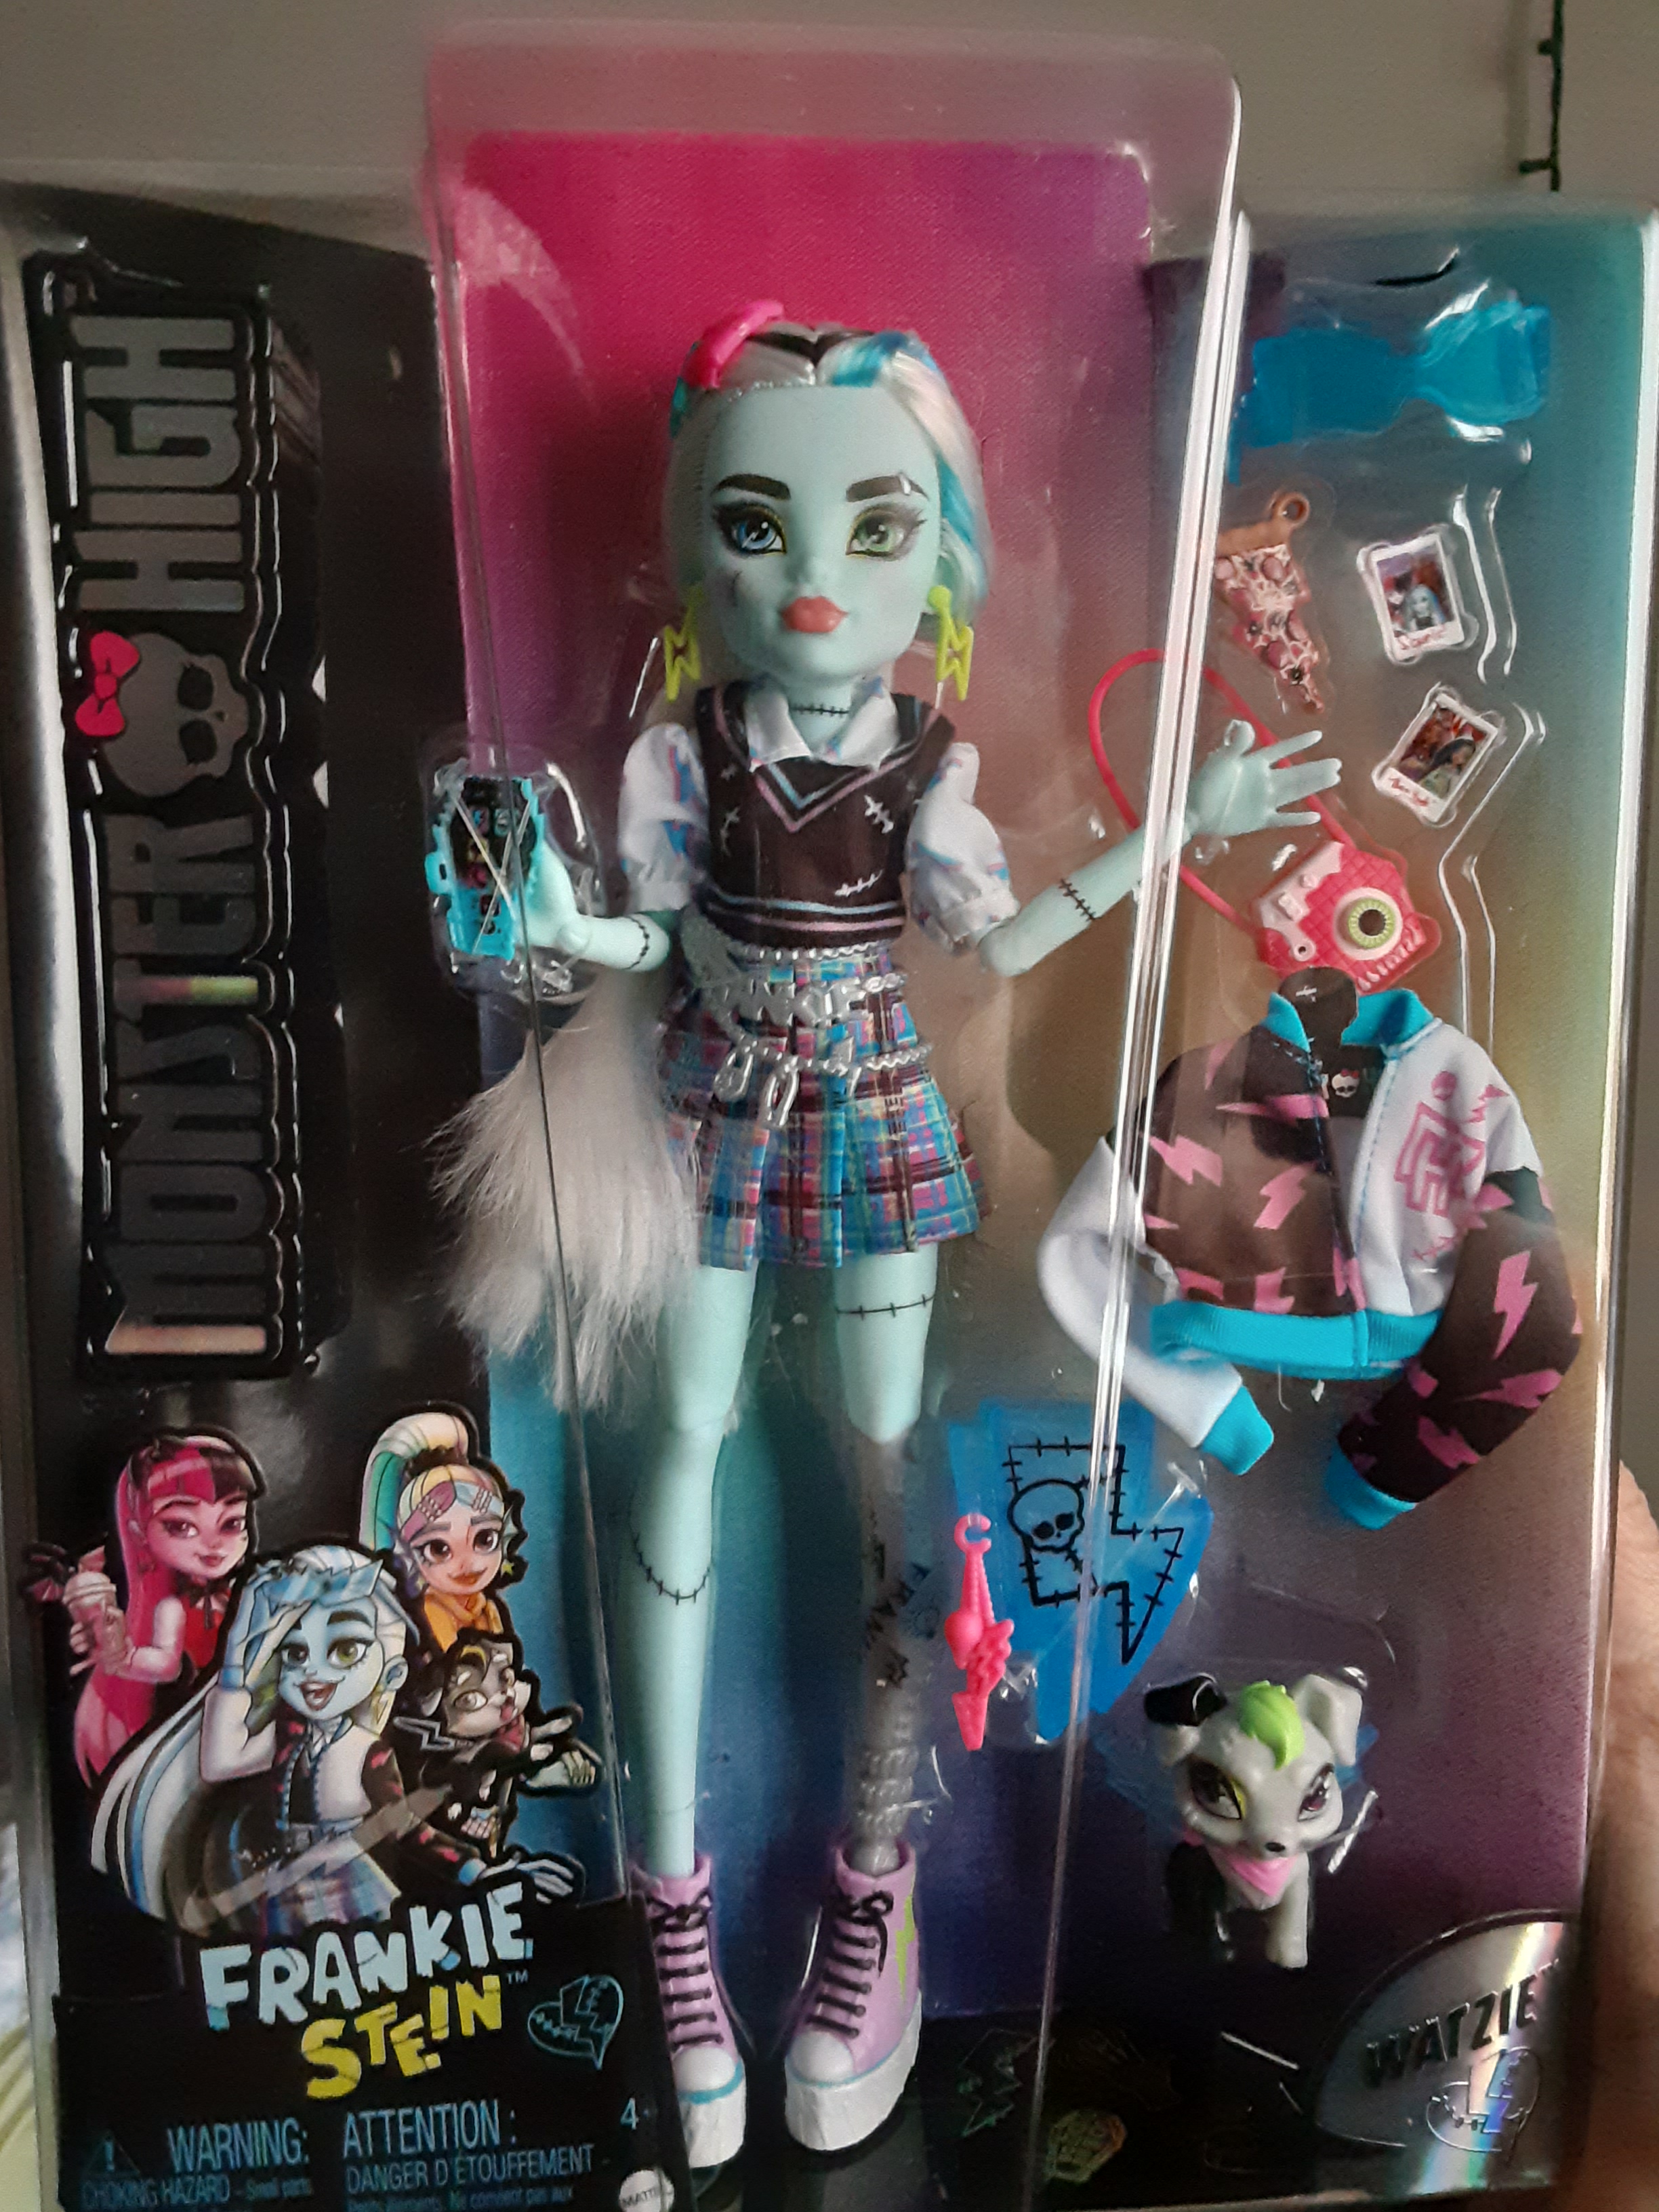 Bundle of 3 Monster High® Dolls (Clawdeen Wolf™ & Frankie Stein